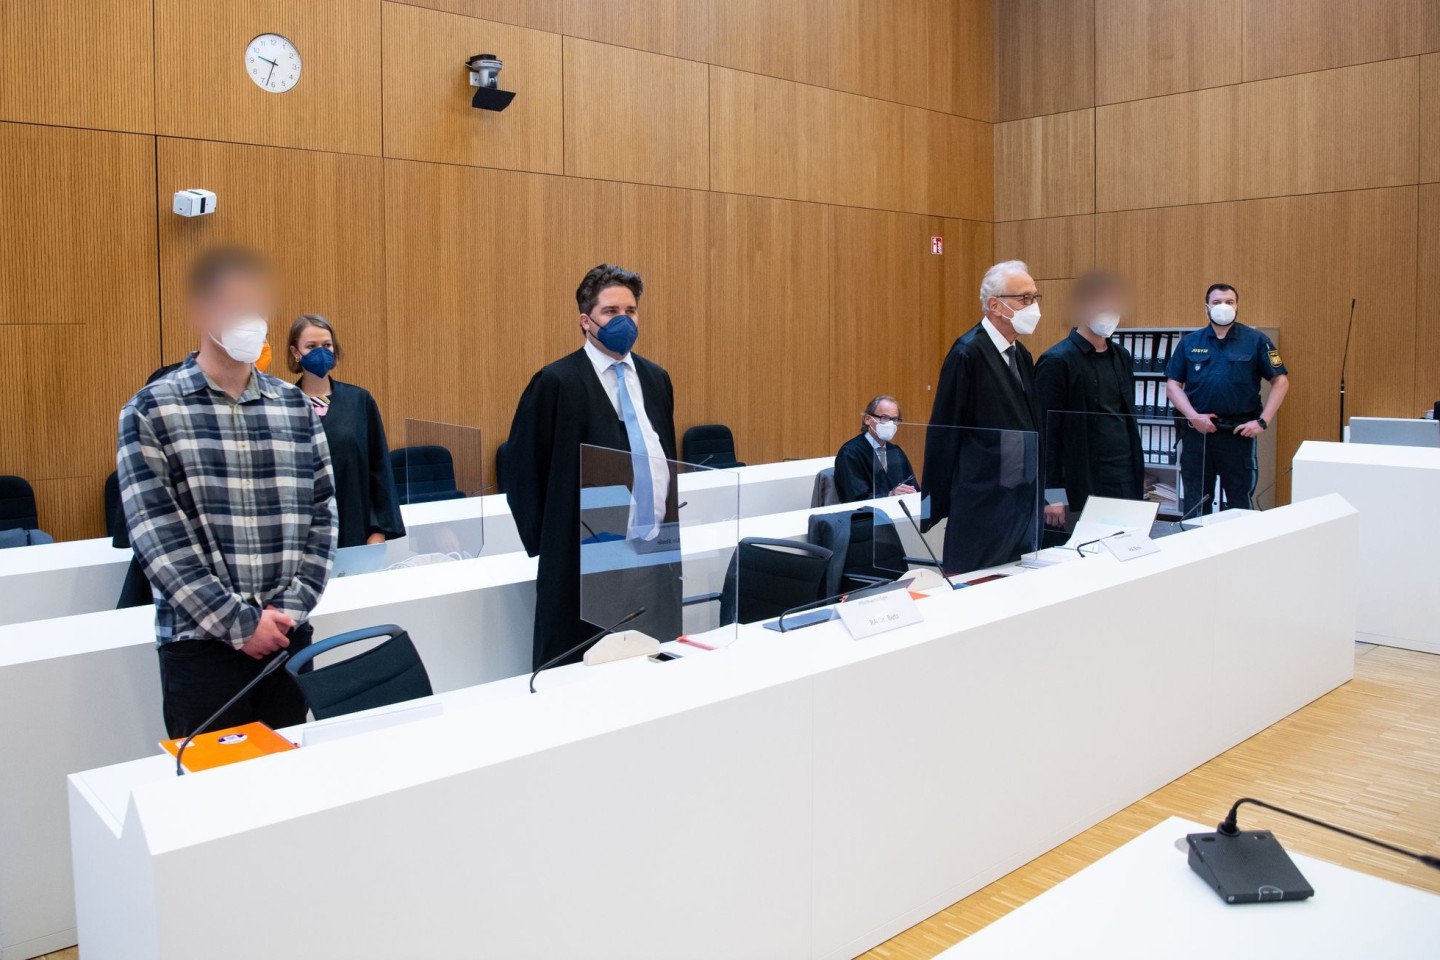 Die zwei wegen Mordes angeklagten Männer (l und 2.v.r.) mit ihren Anwälten vor Beginn der Verhandlung im Sitzungssaal.